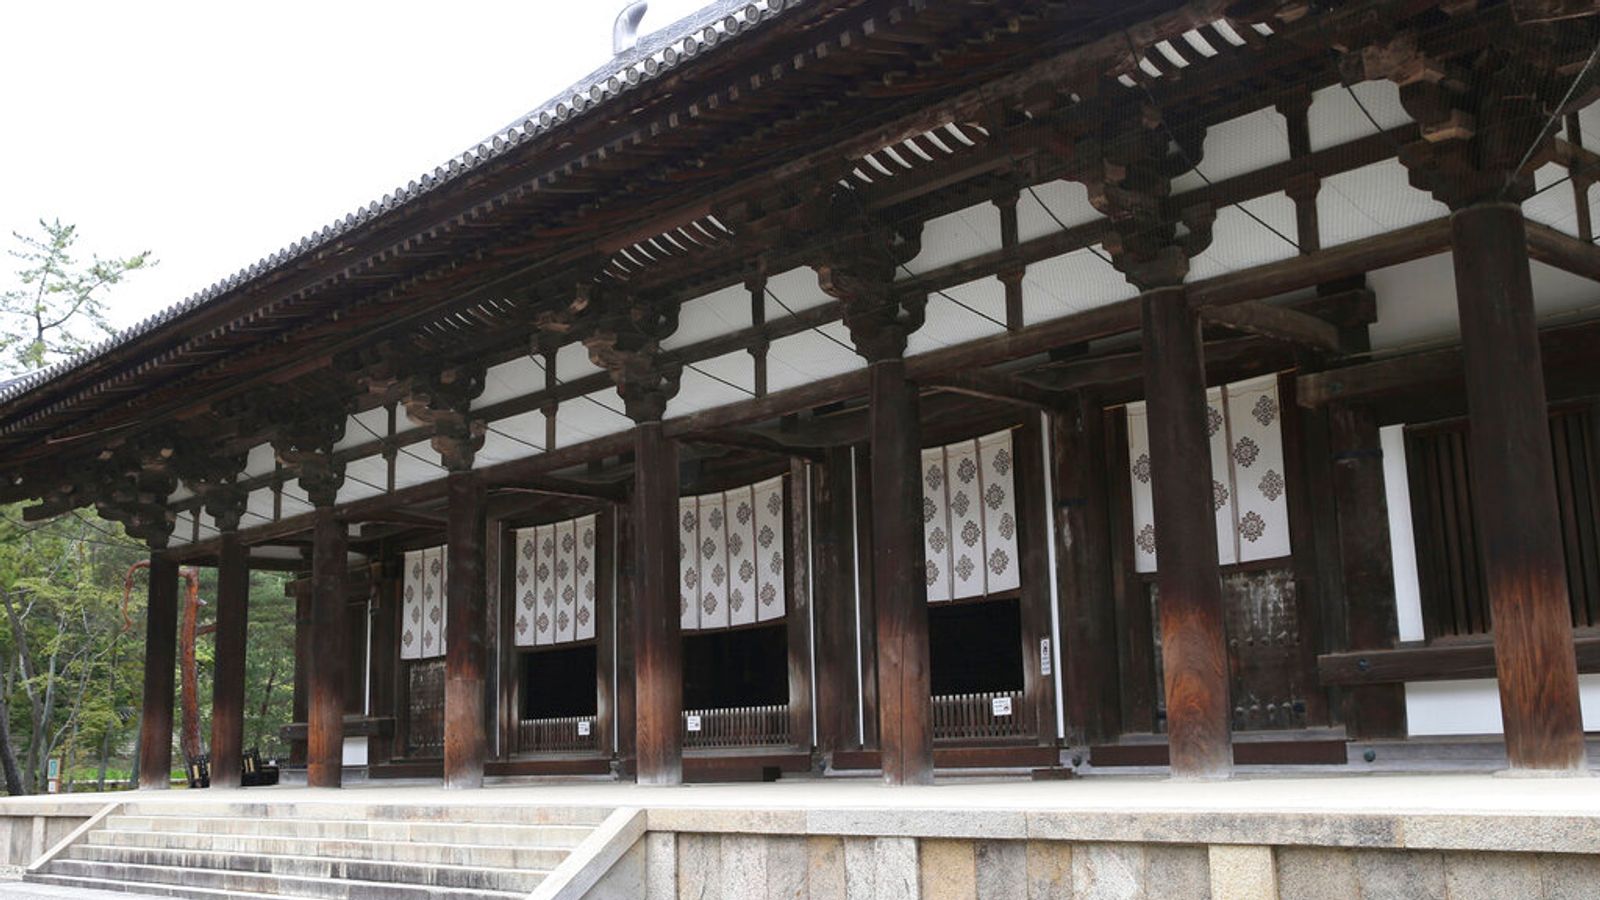 Un adolescent grave son propre nom sur un pilier d’un temple du 8ème siècle au Japon |  Nouvelles du monde